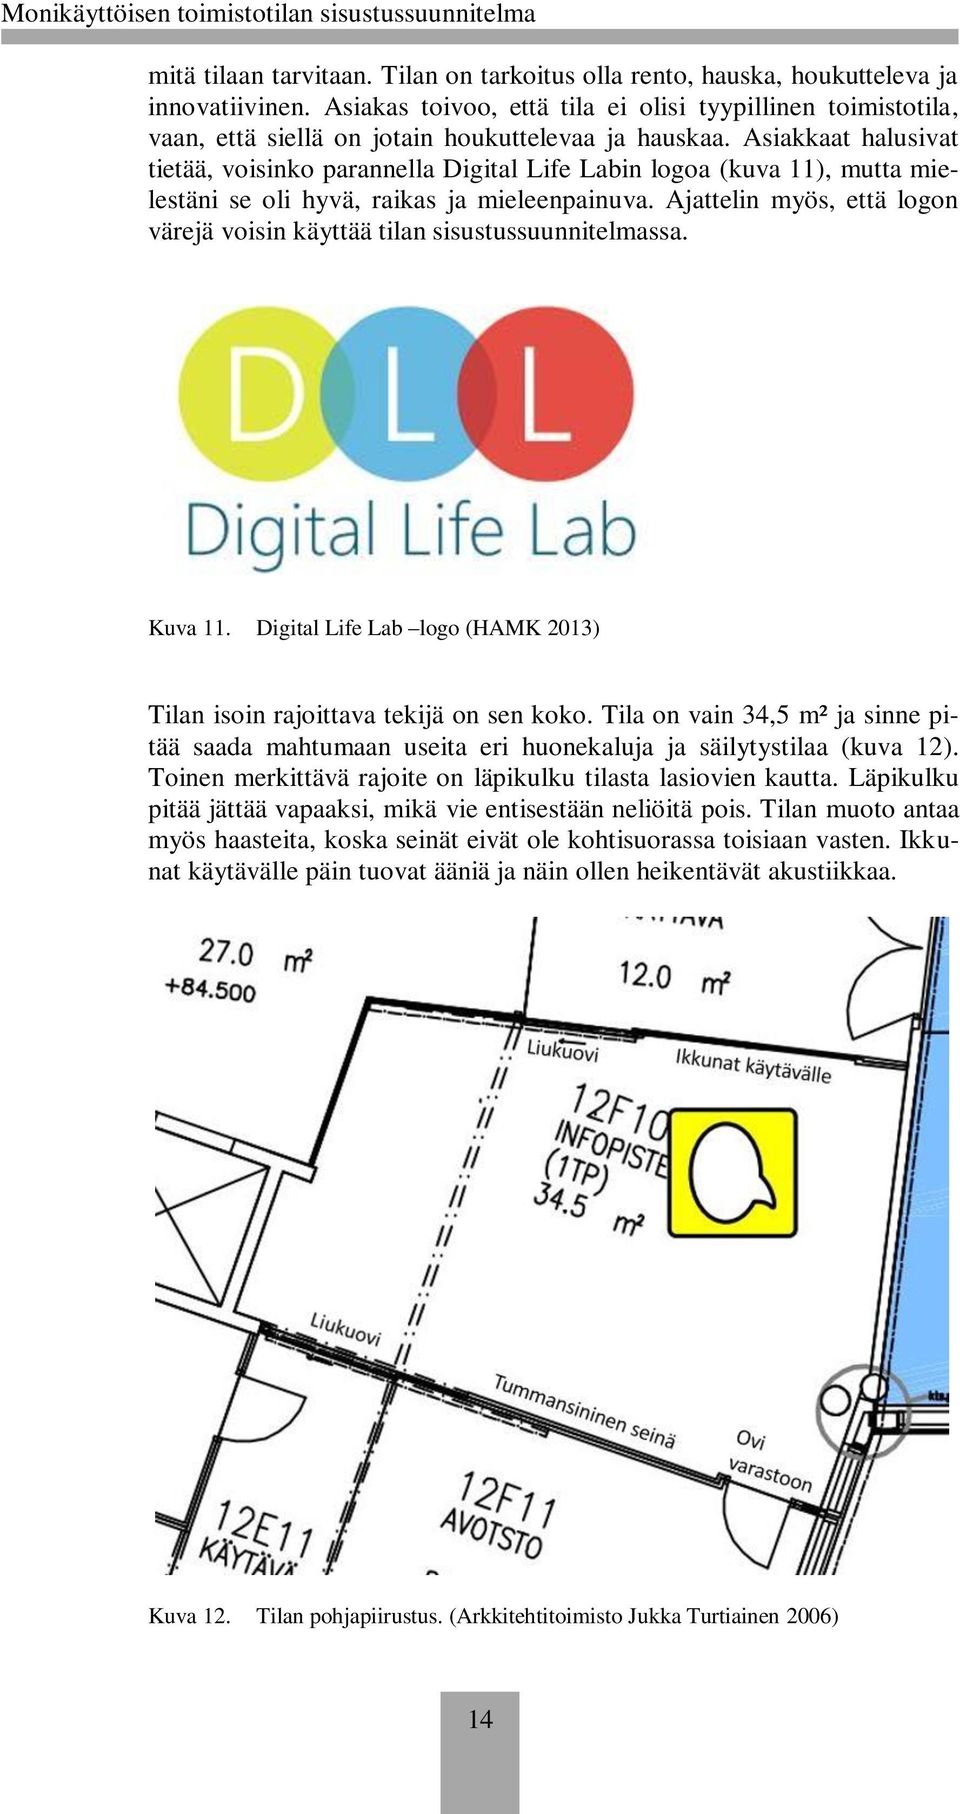 Asiakkaat halusivat tietää, voisinko parannella Digital Life Labin logoa (kuva 11), mutta mielestäni se oli hyvä, raikas ja mieleenpainuva.